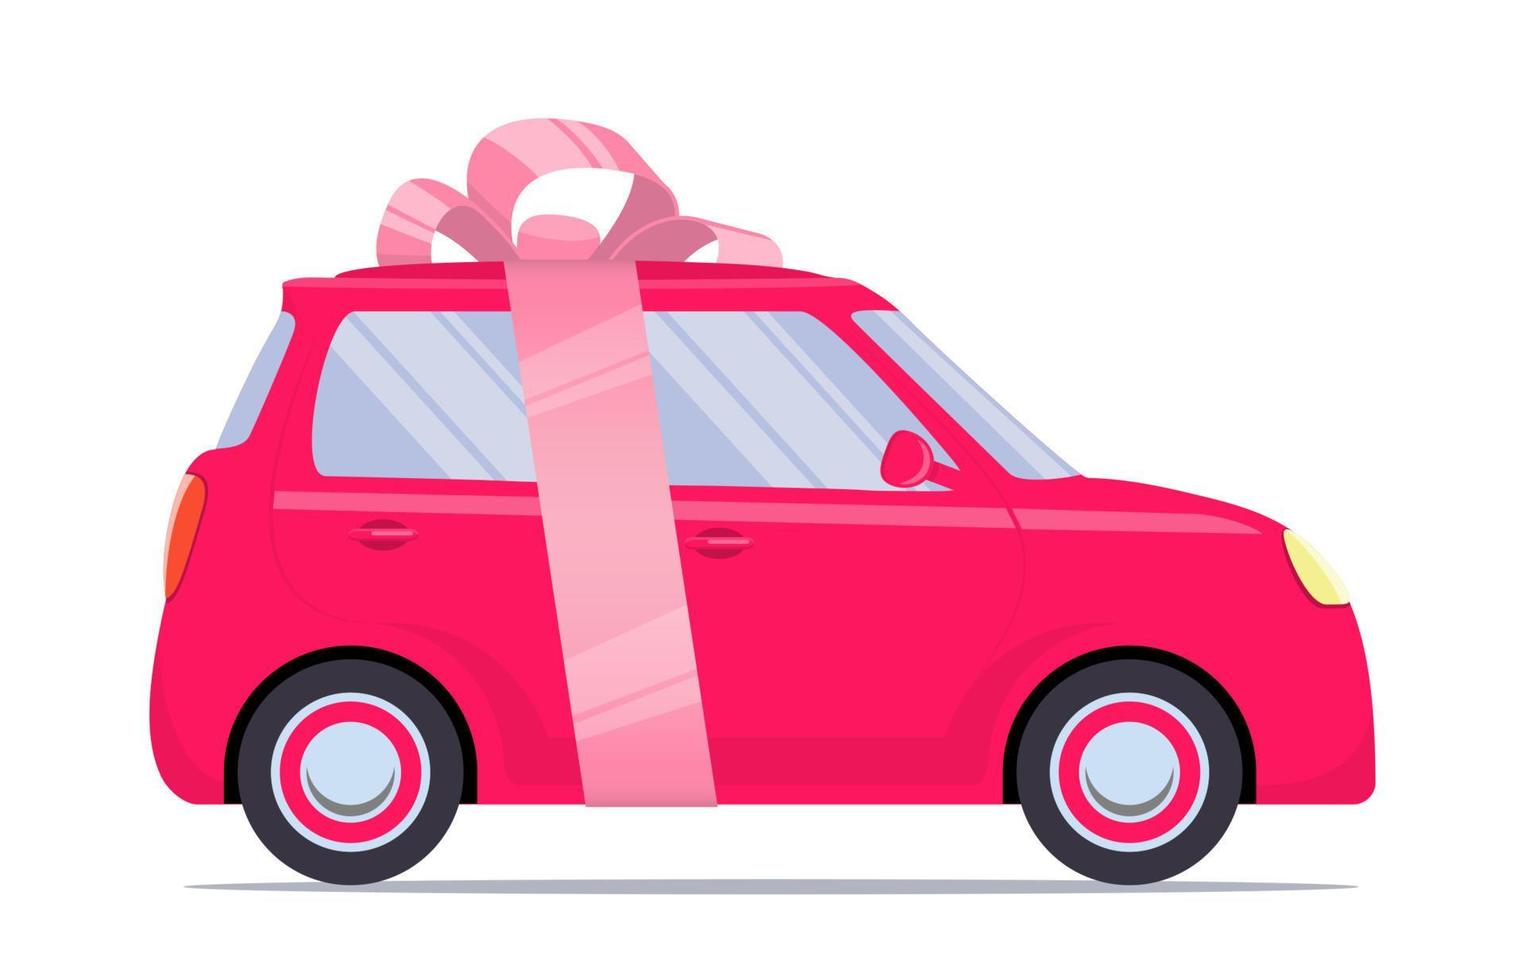 söt liten bil som en gåva, med rosa band och rosett. vektor platt illustration, isolerat.